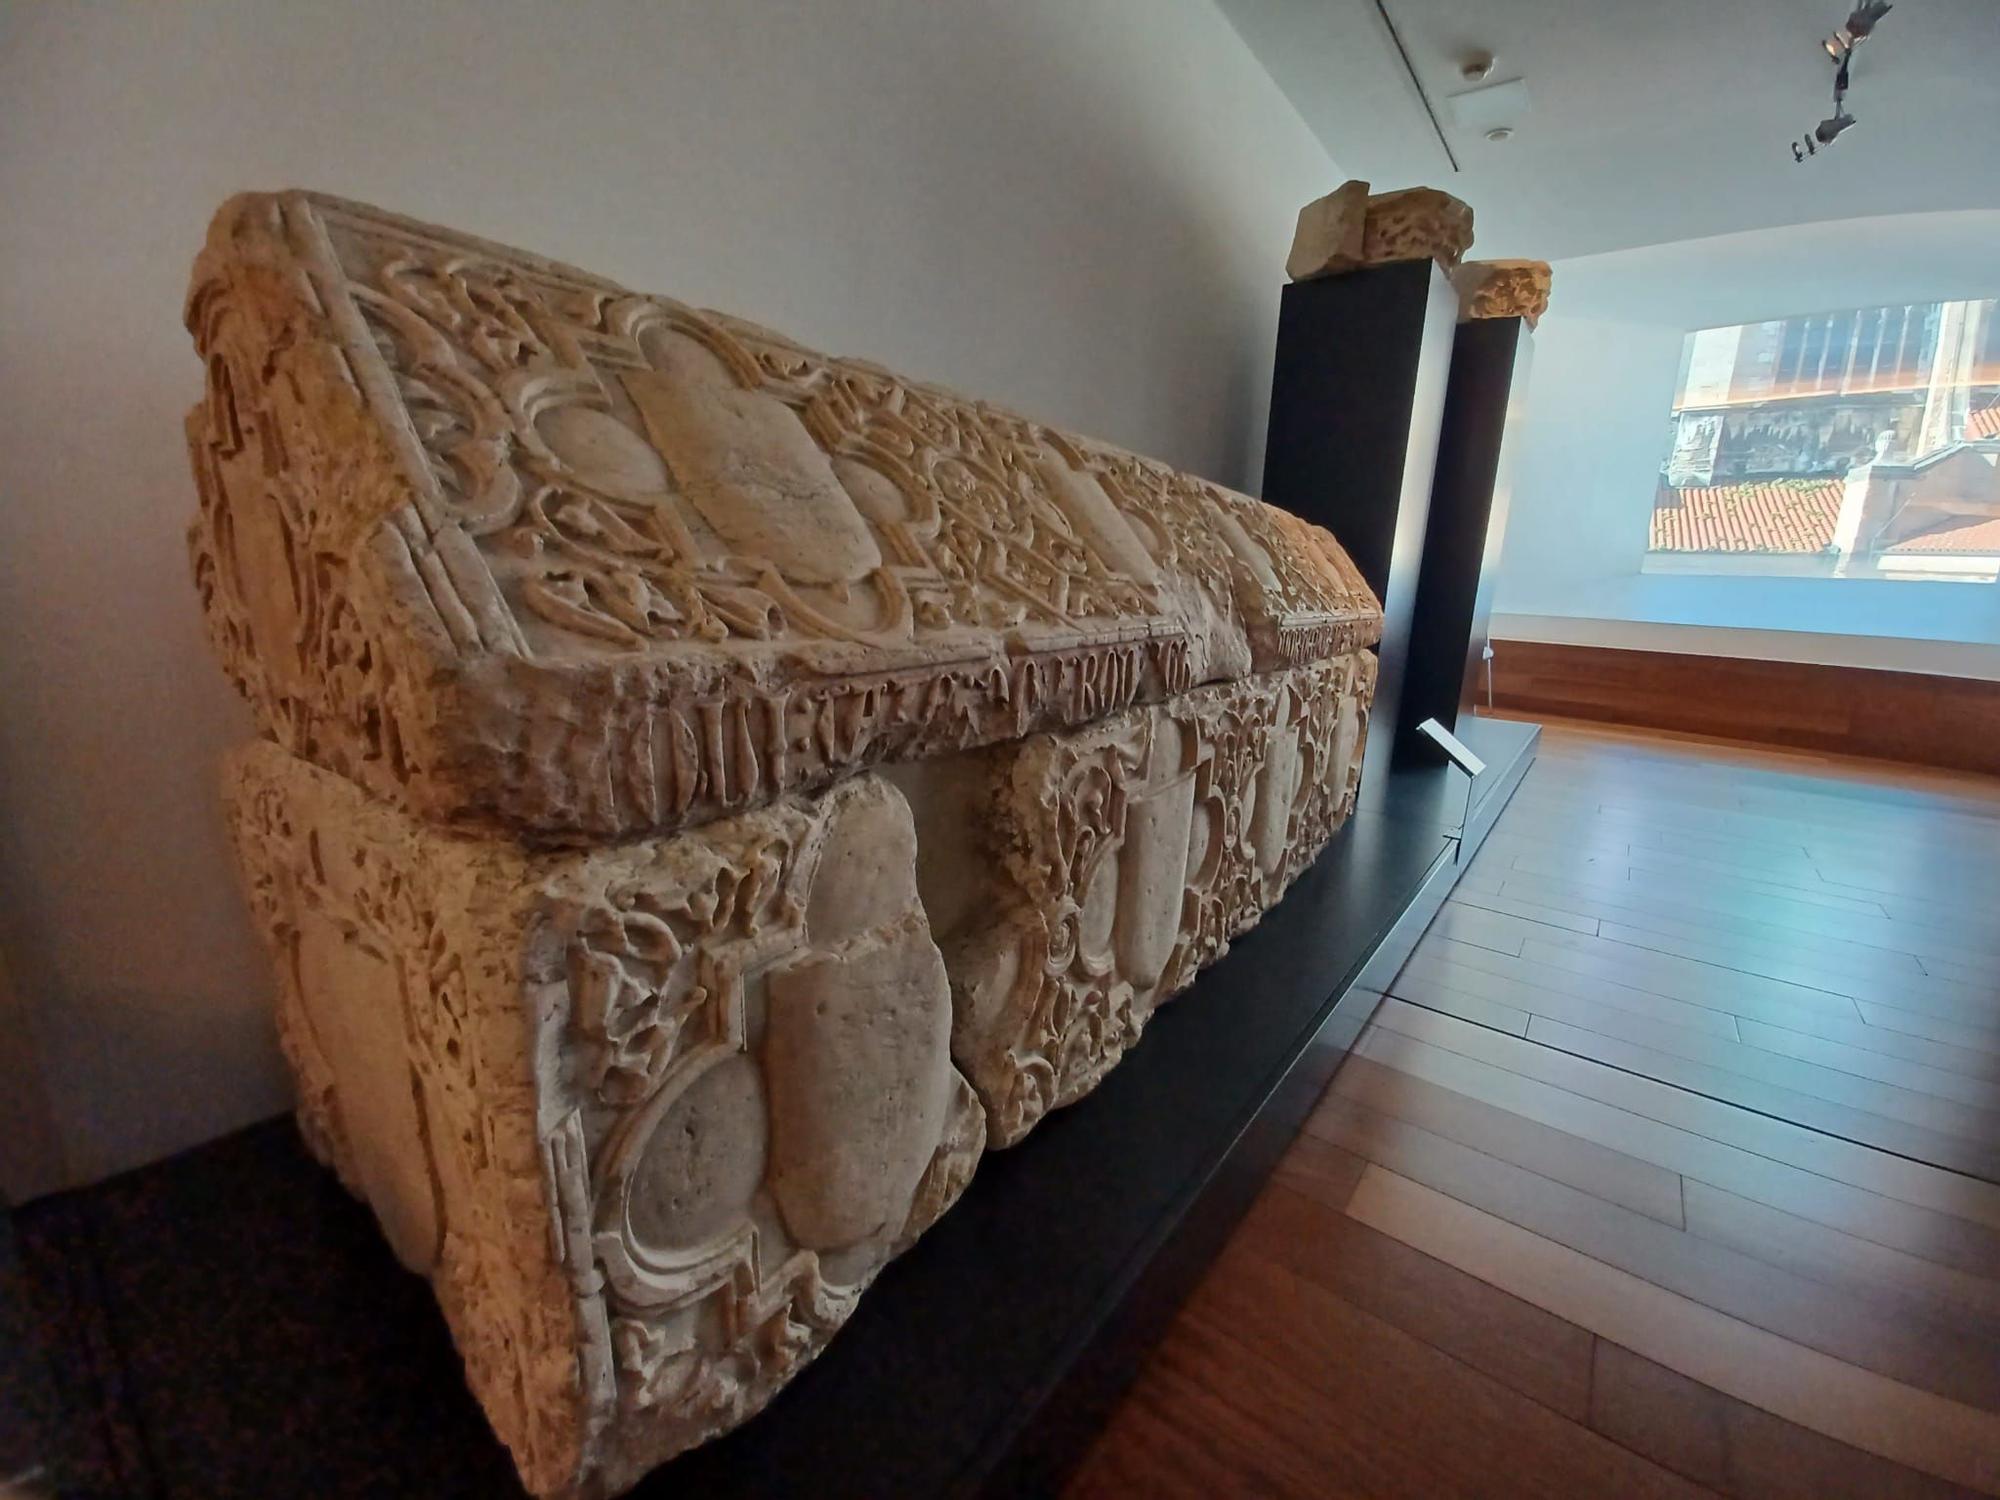 El sarcófago de Rodrigo Álvarez de las Asturias: así es la tumba del noble y poderoso señor de Noreña y Siero